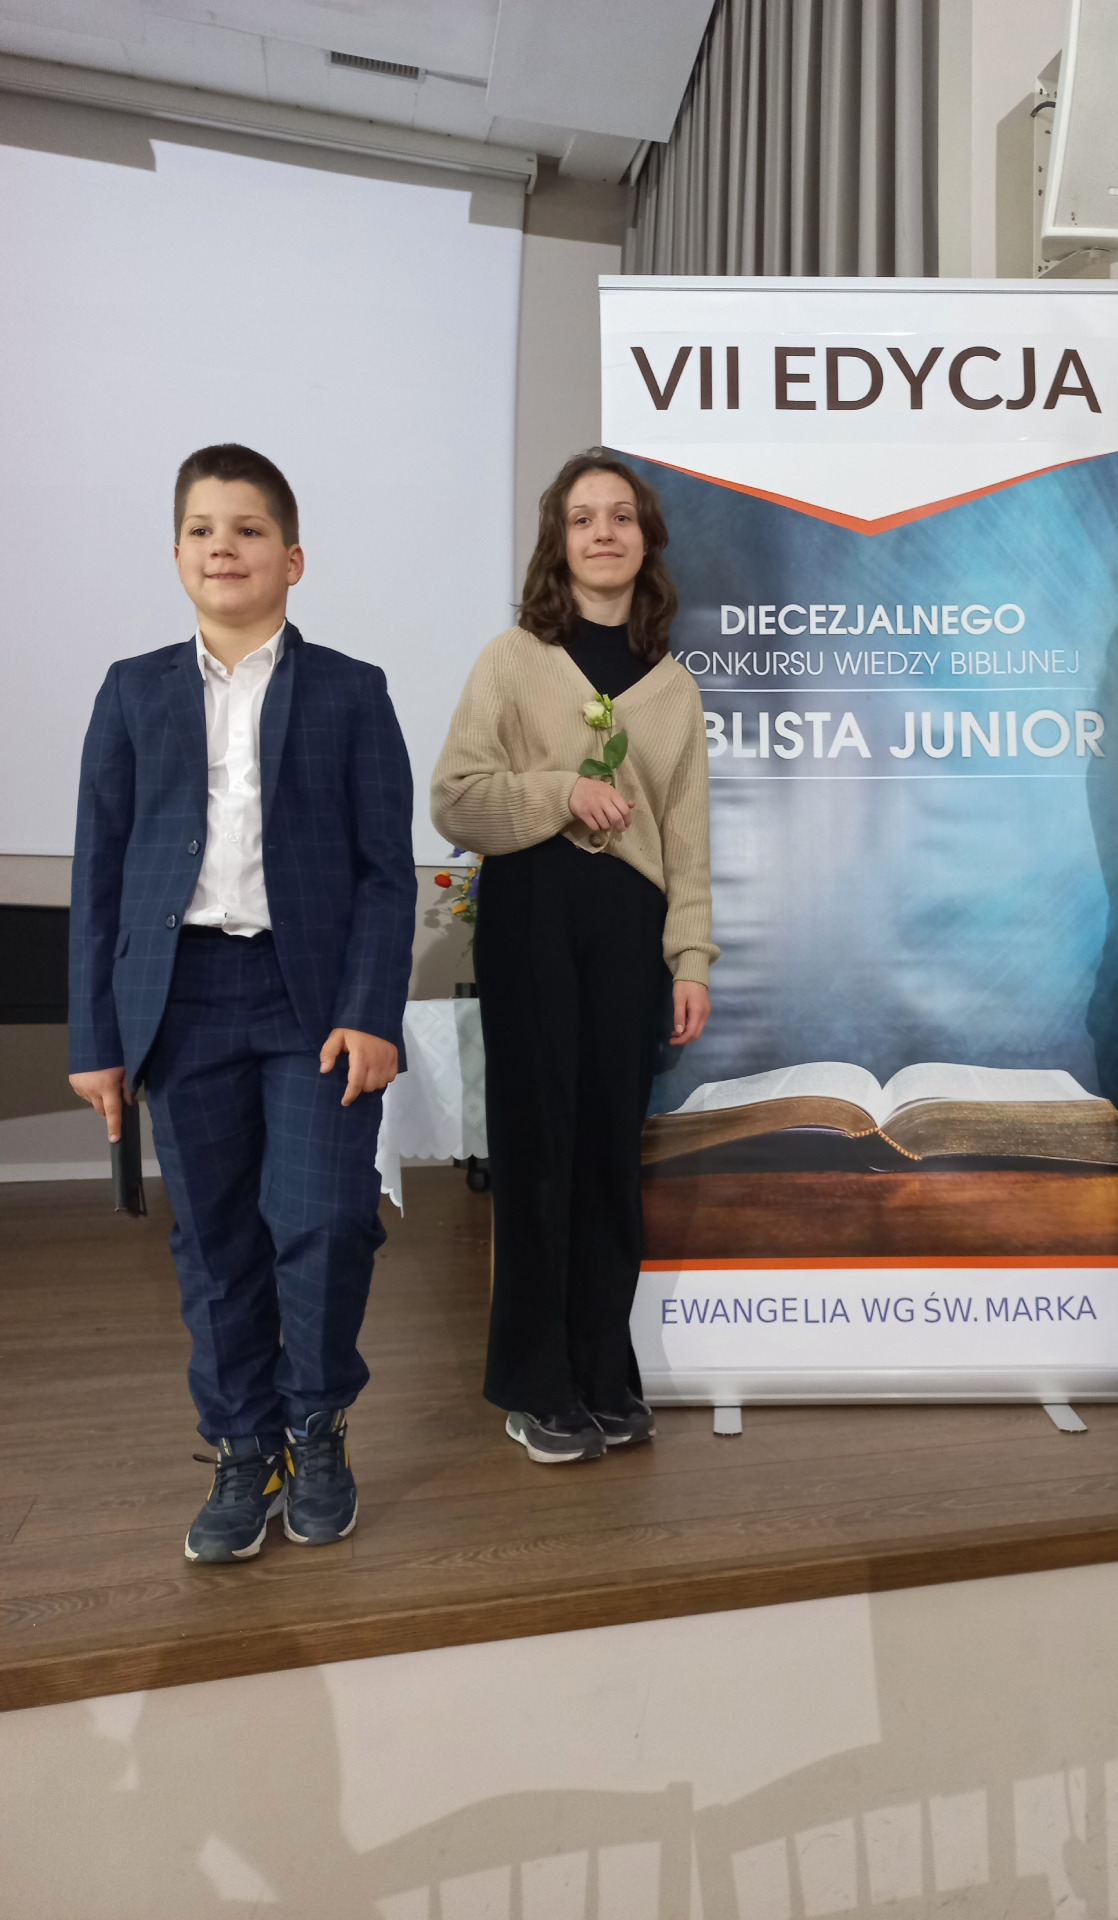  VII edycji Diecezjalnego Konkursu Wiedzy Biblijnej – Biblista Junior - Urszula Nowicka i Paweł Czerwiec